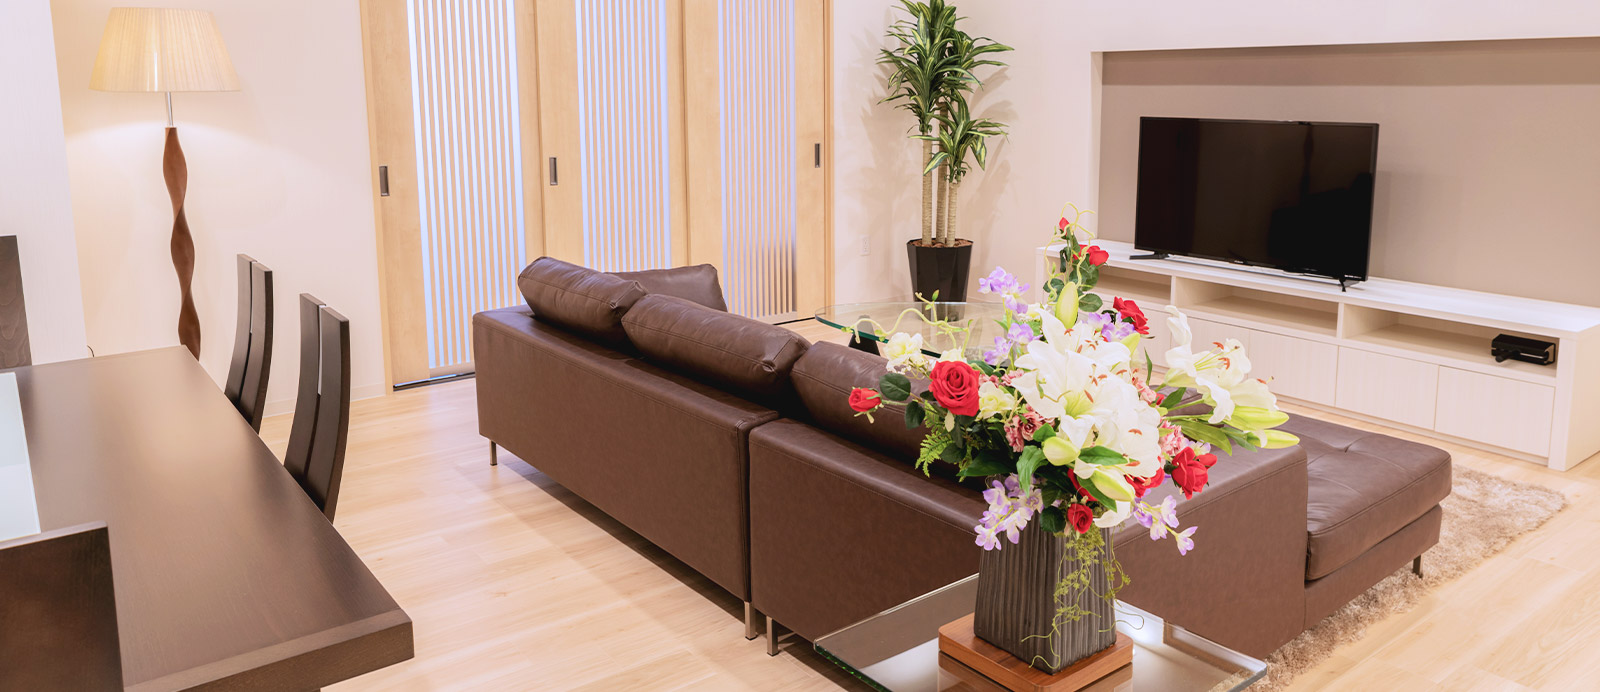 柳生ホールで葬儀・葬式が9.5万円からできる家族葬の仙和のホールの内装イメージ